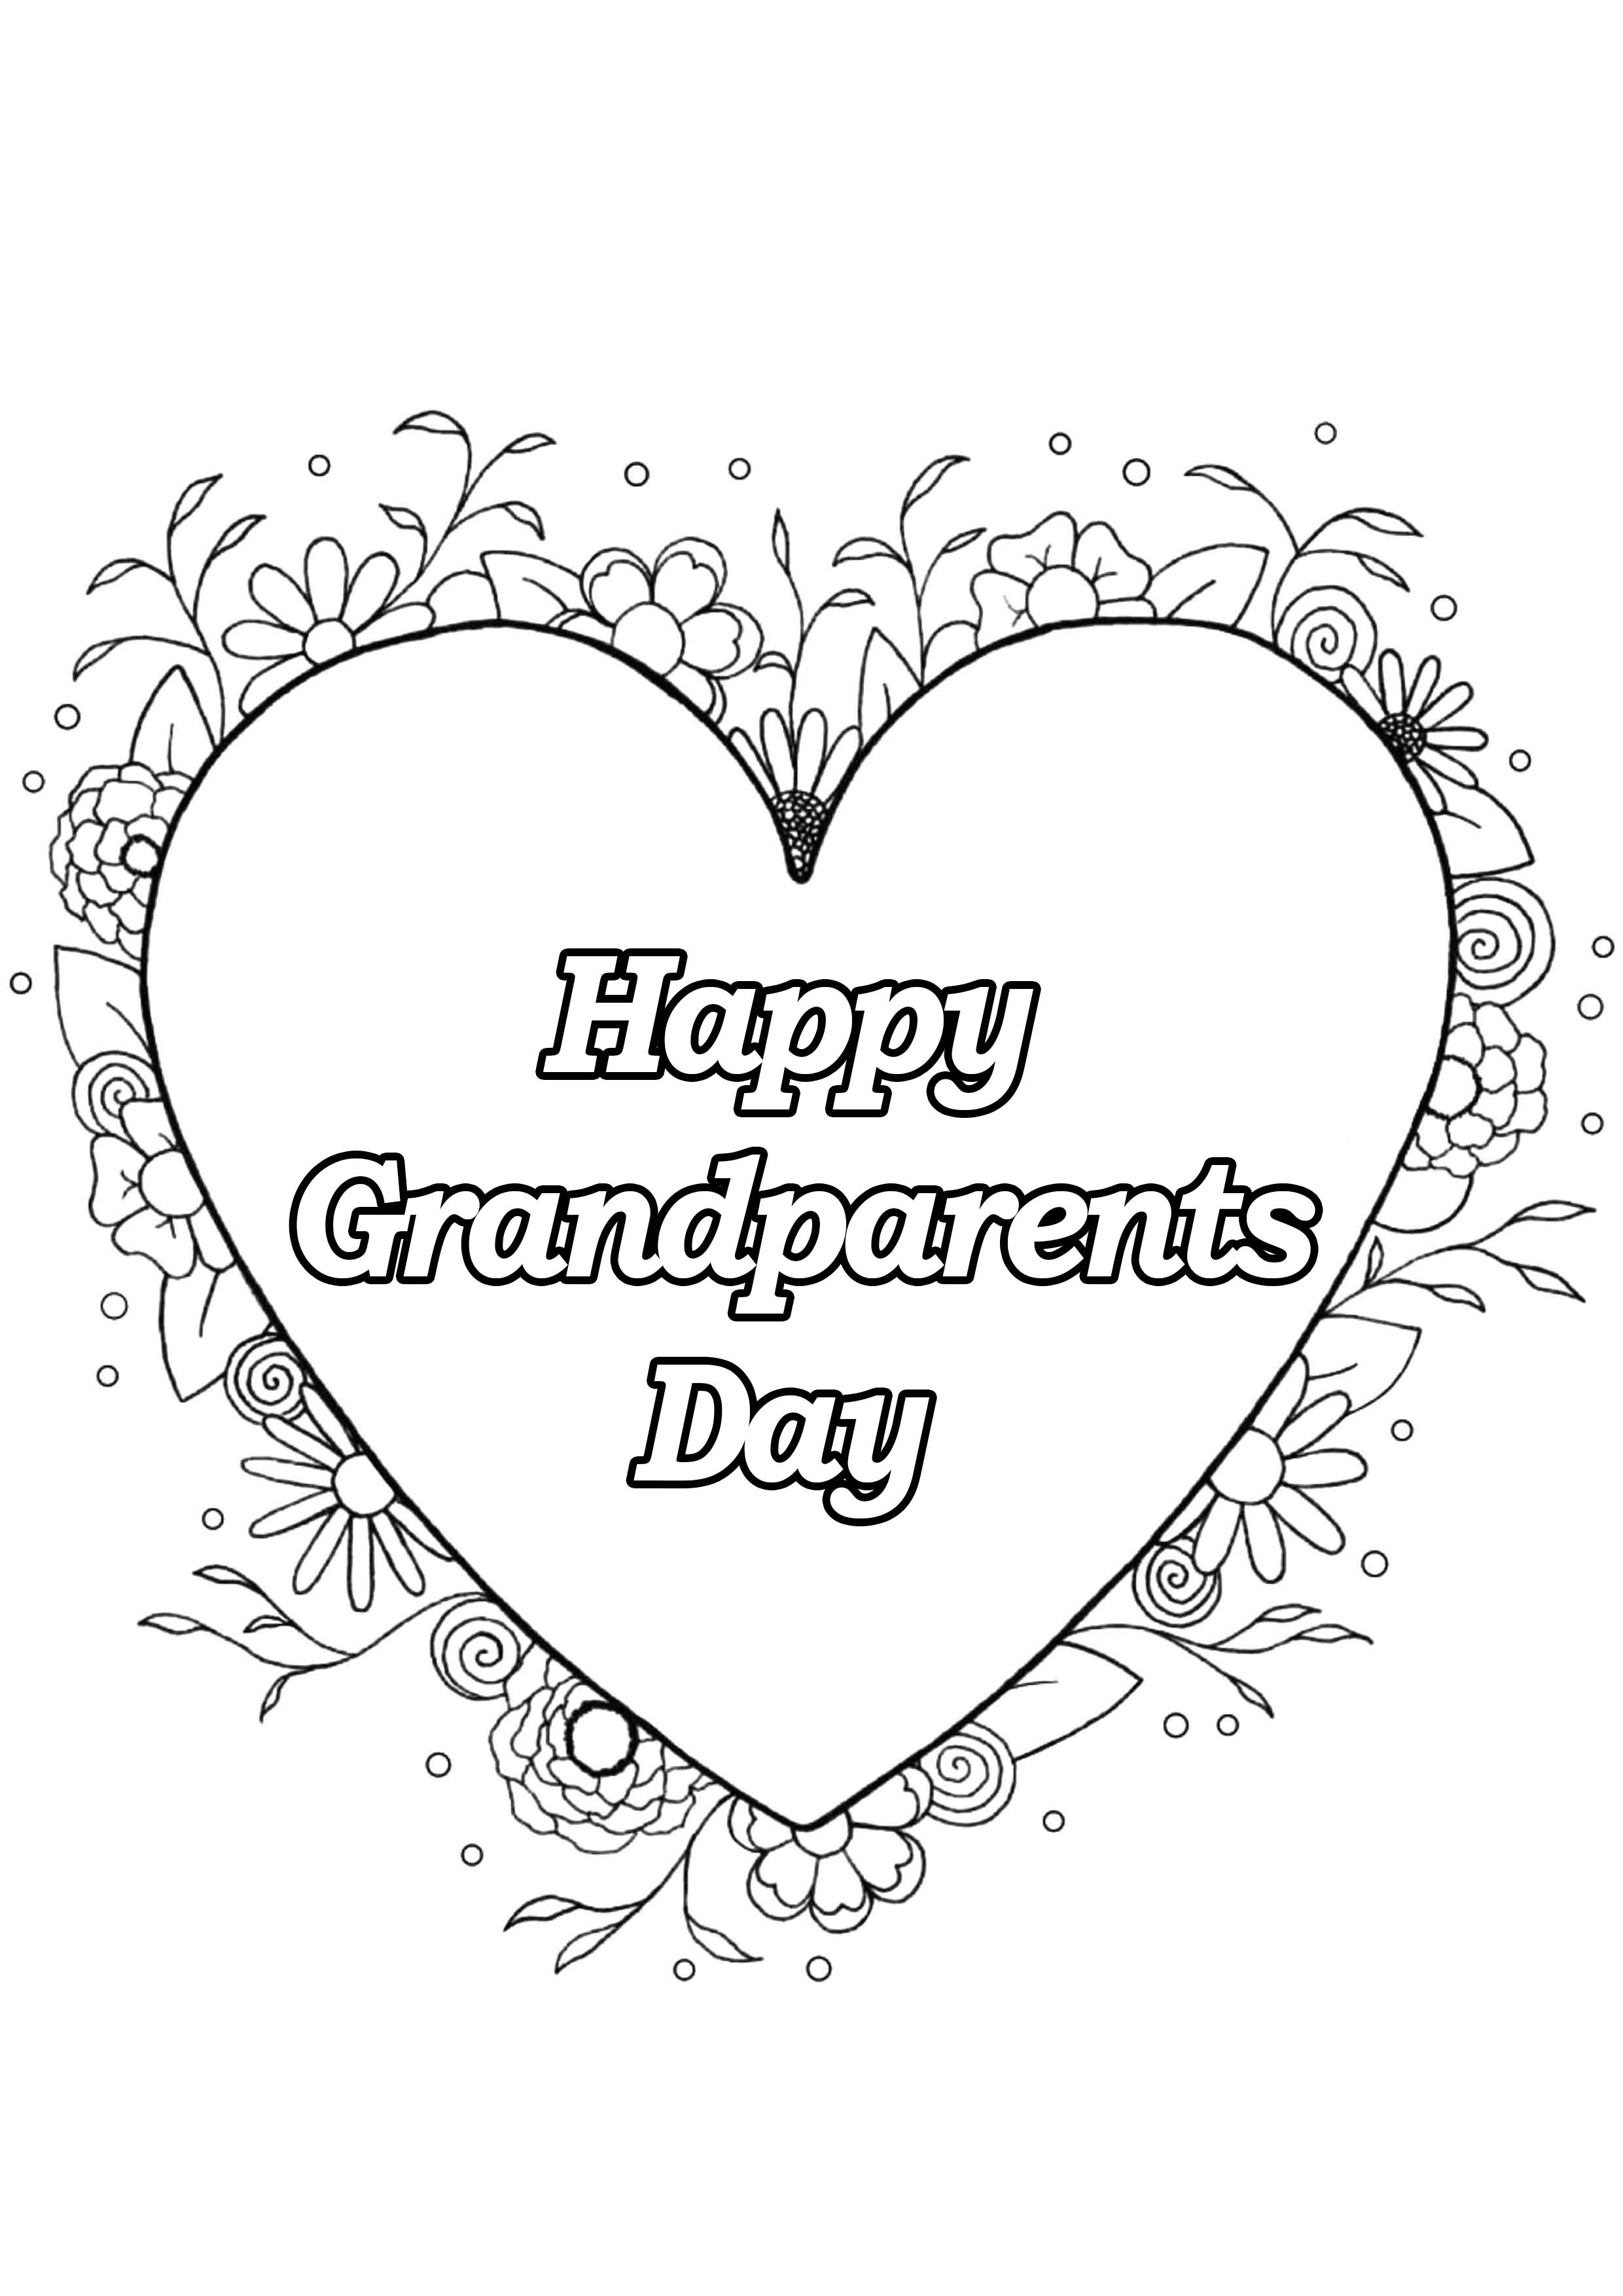 Un precioso mandala en forma de corazón para el Día de los Abuelos